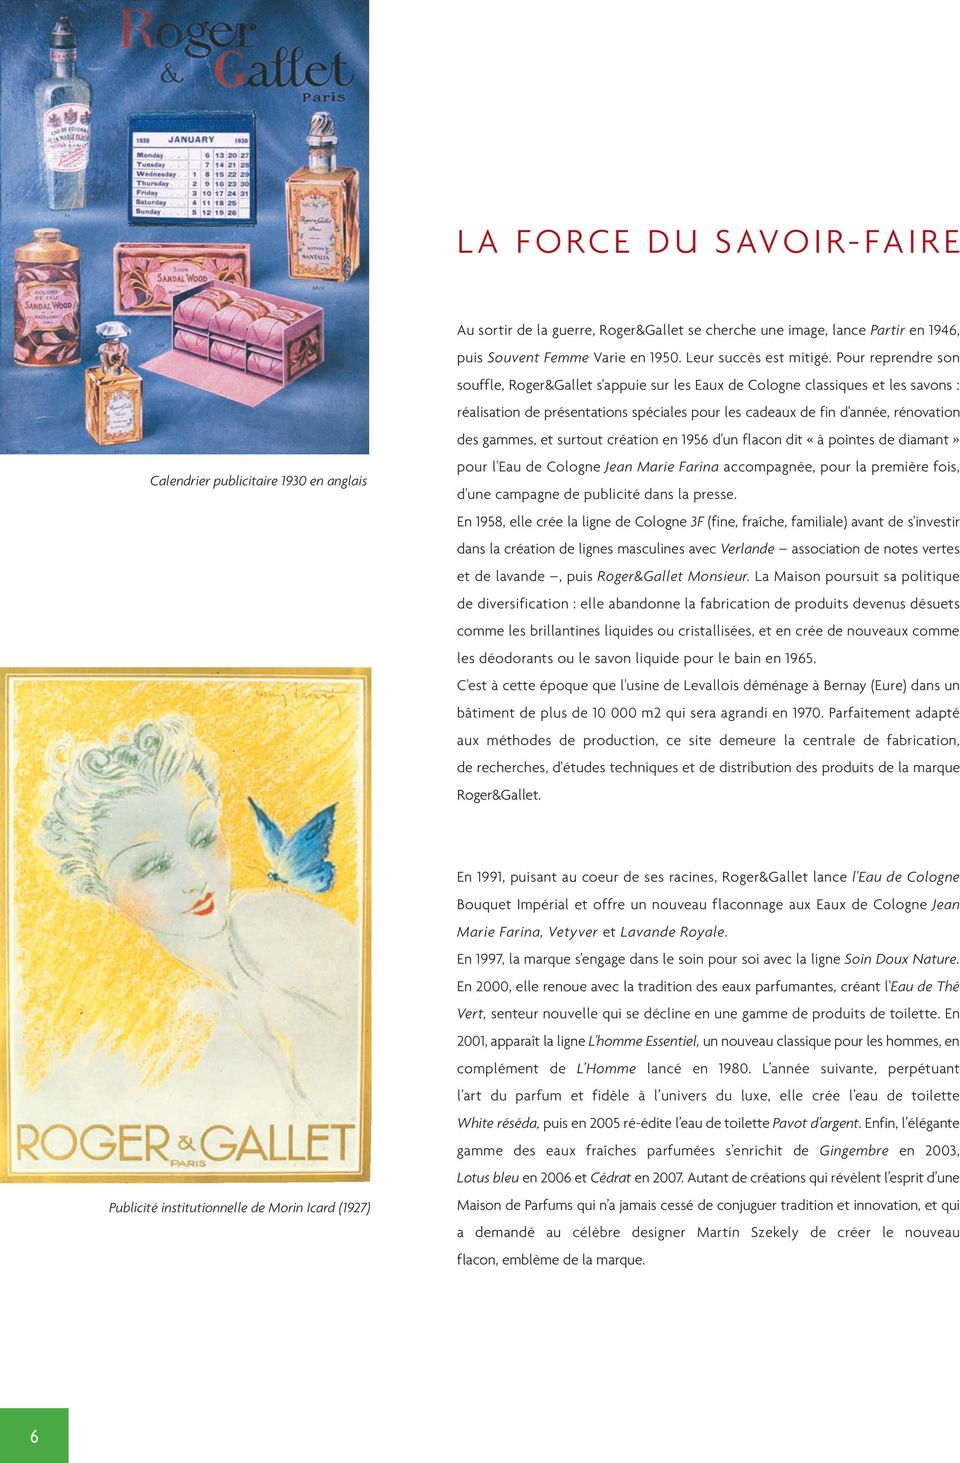 Pour reprendre son souffle, Roger&Gallet s'appuie sur les Eaux de Cologne classiques et les savons : réalisation de présentations spéciales pour les cadeaux de fin d'année, rénovation des gammes, et